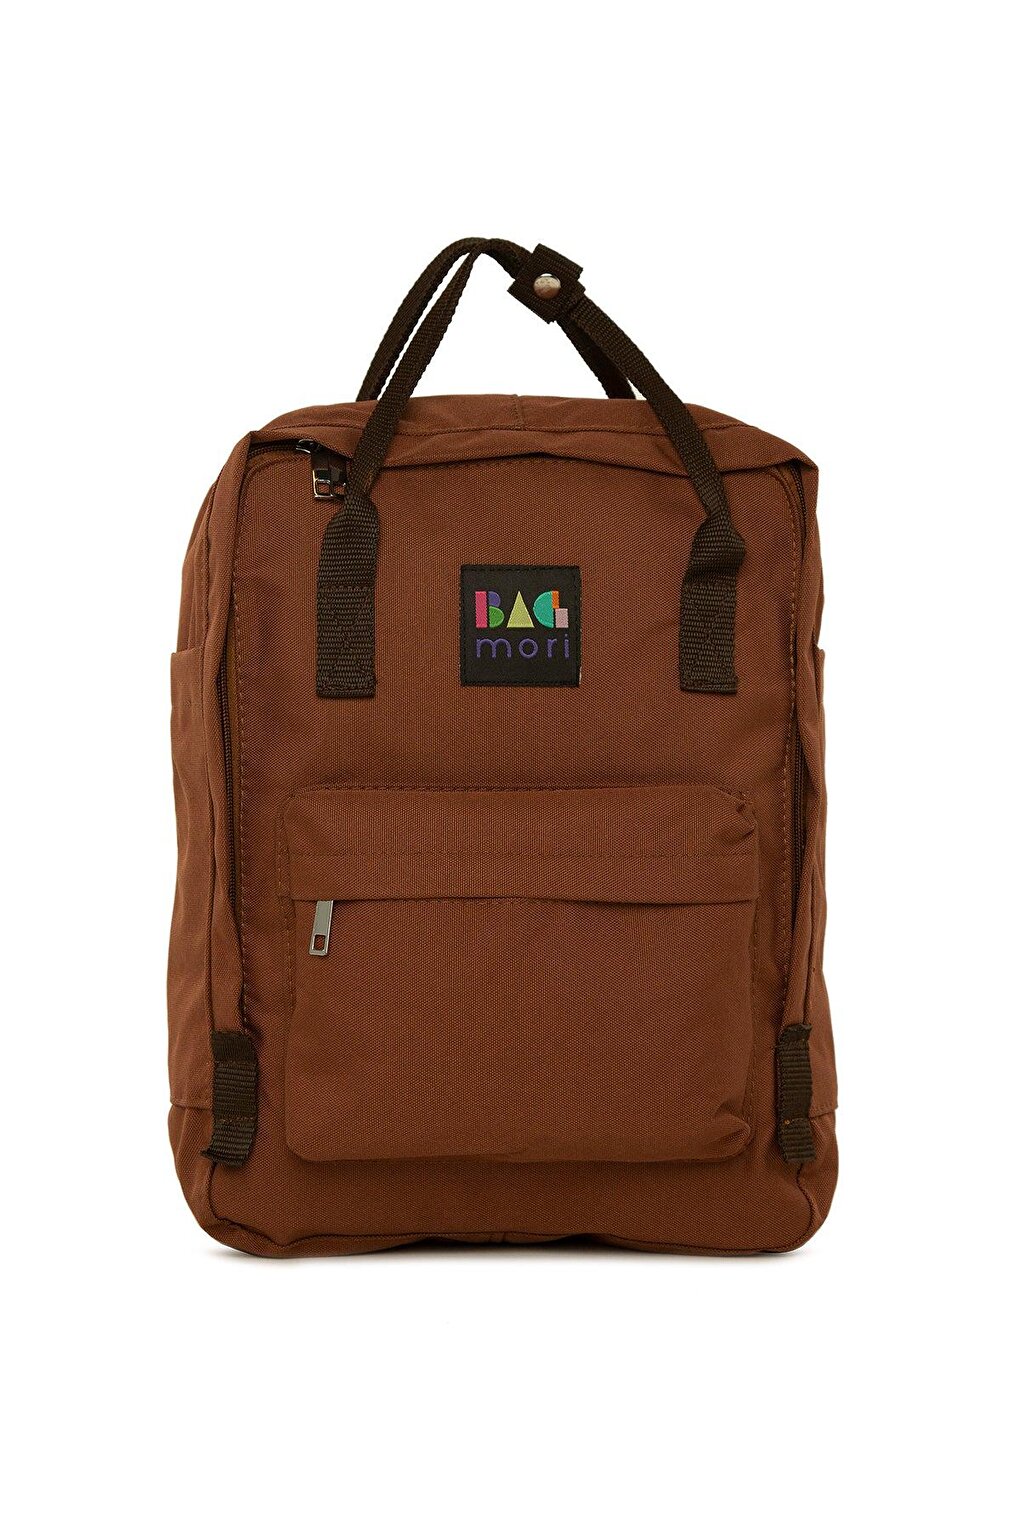 Яркий регулируемый рюкзак с квадратным ремнем Bagmori, шоколадная кожа binful шоколадная m